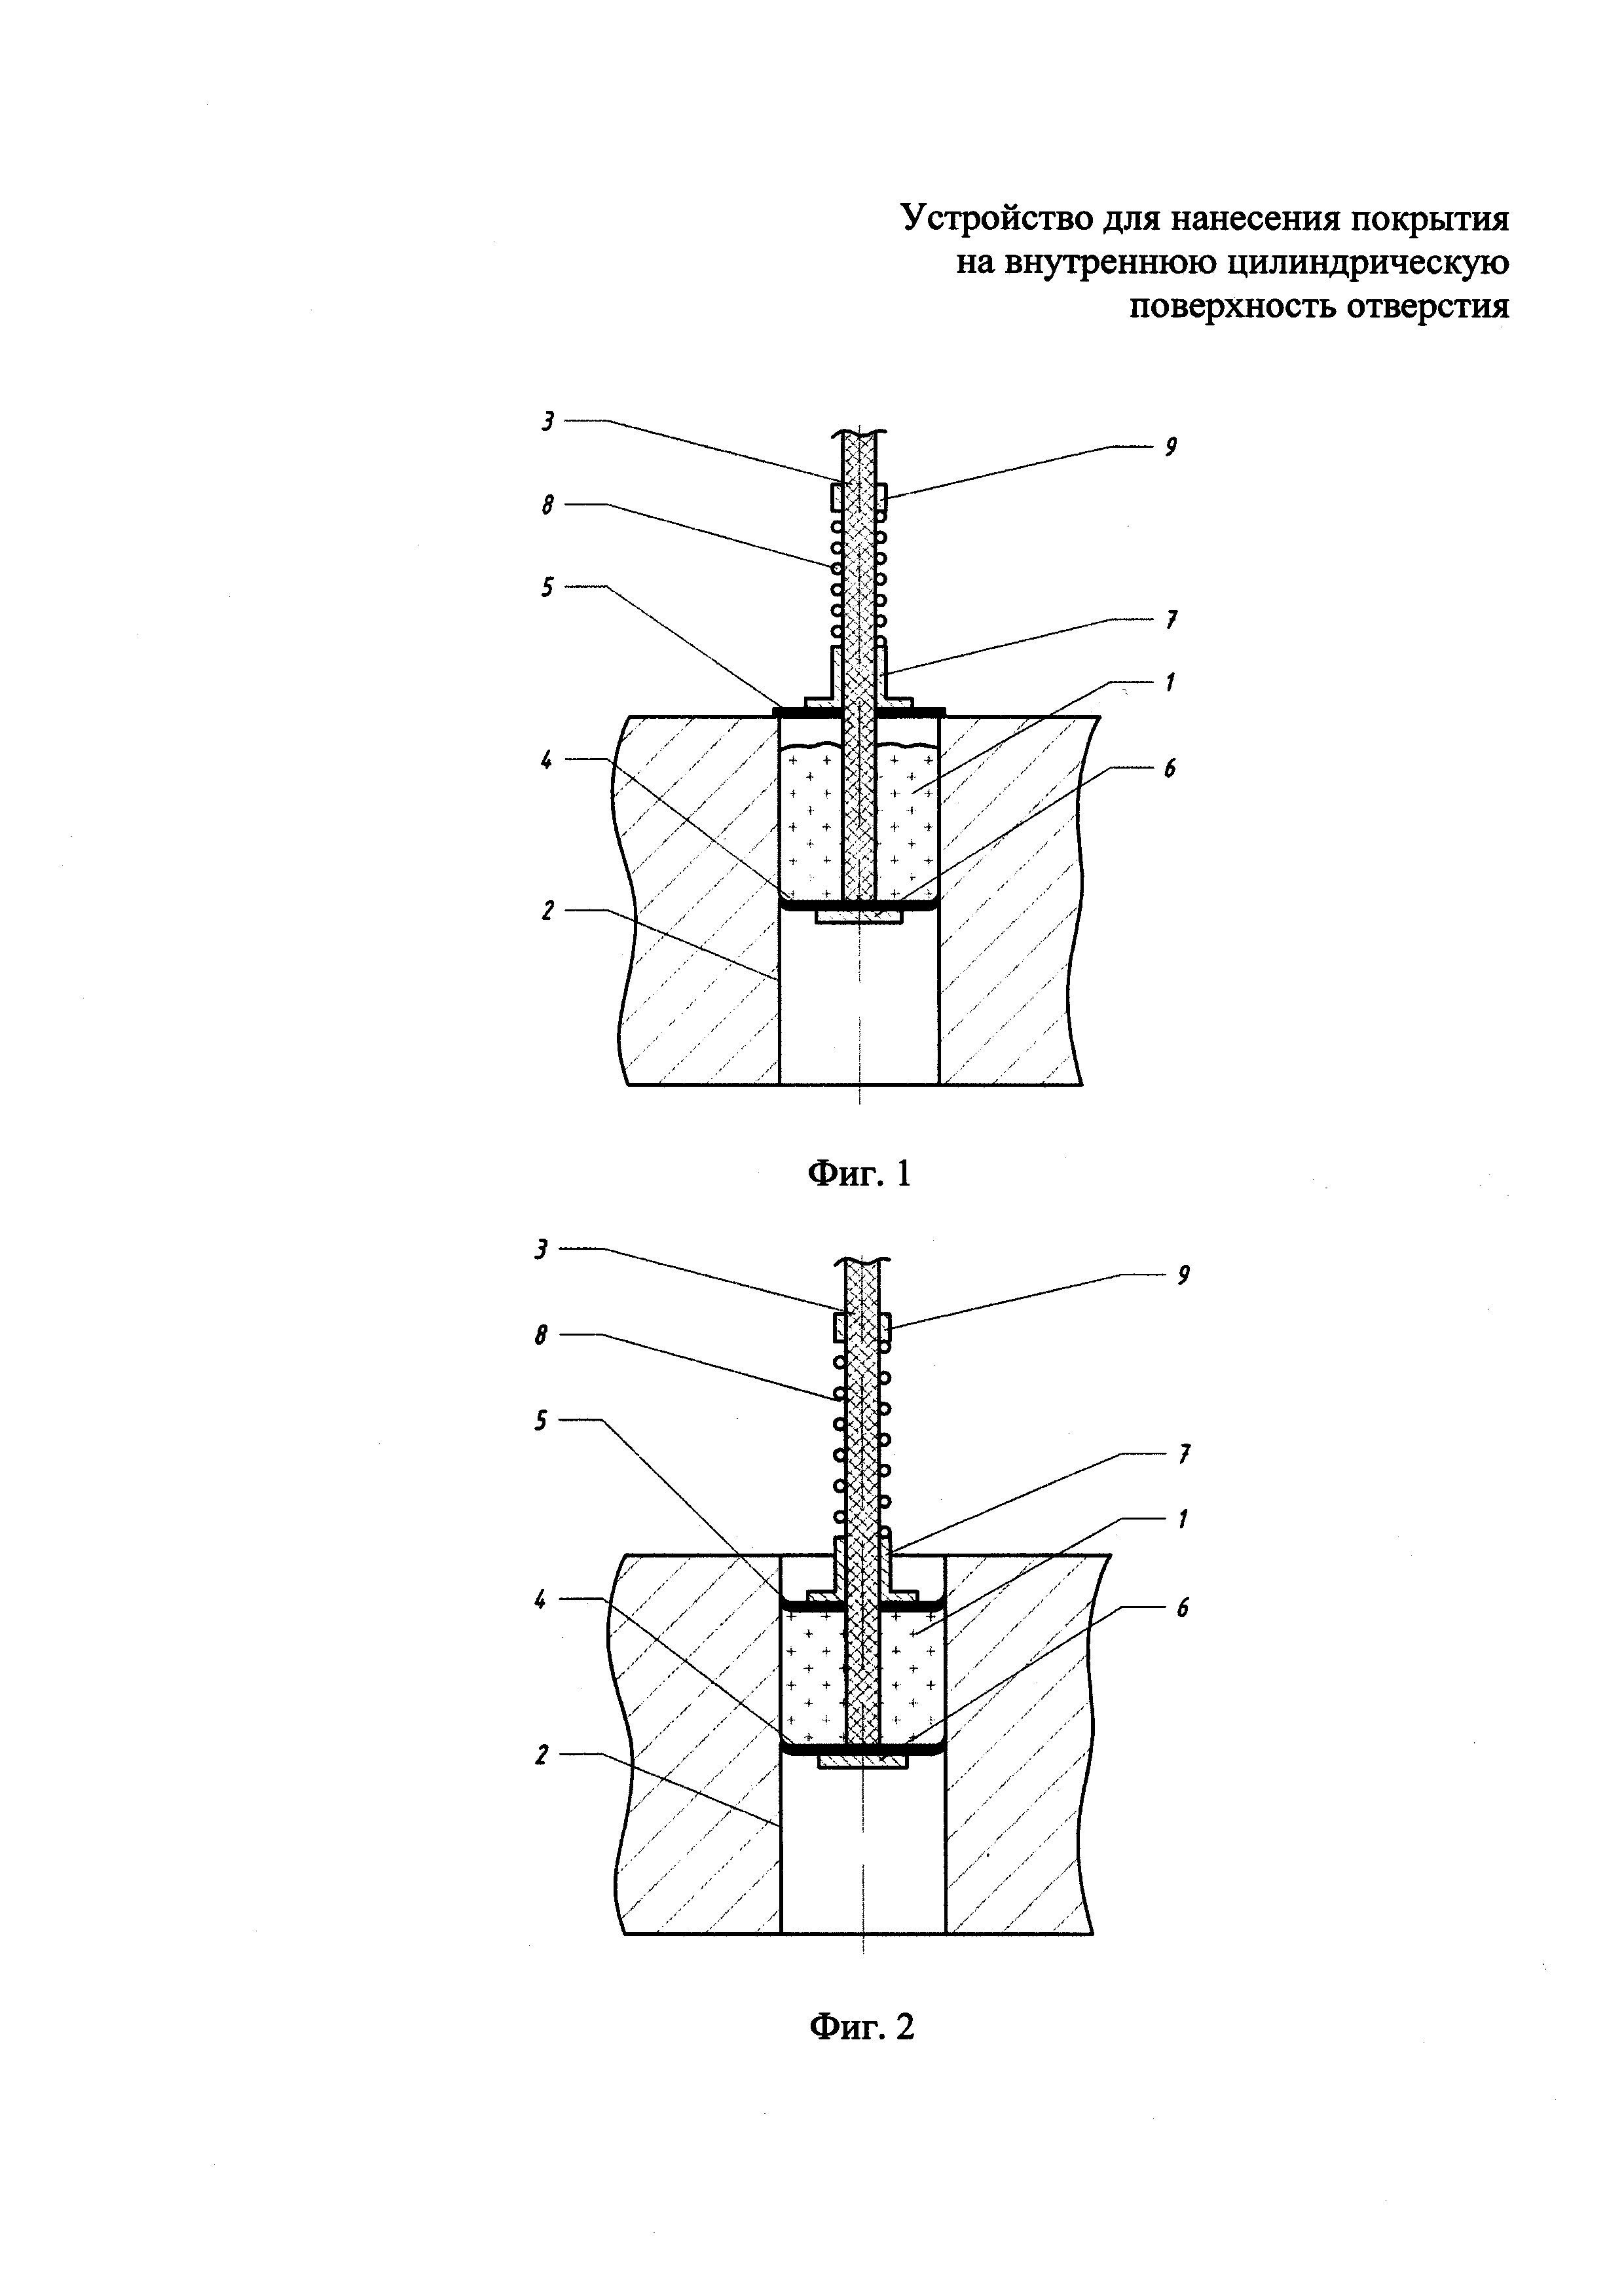 Устройство для нанесения покрытия на внутреннюю цилиндрическую поверхность отверстия